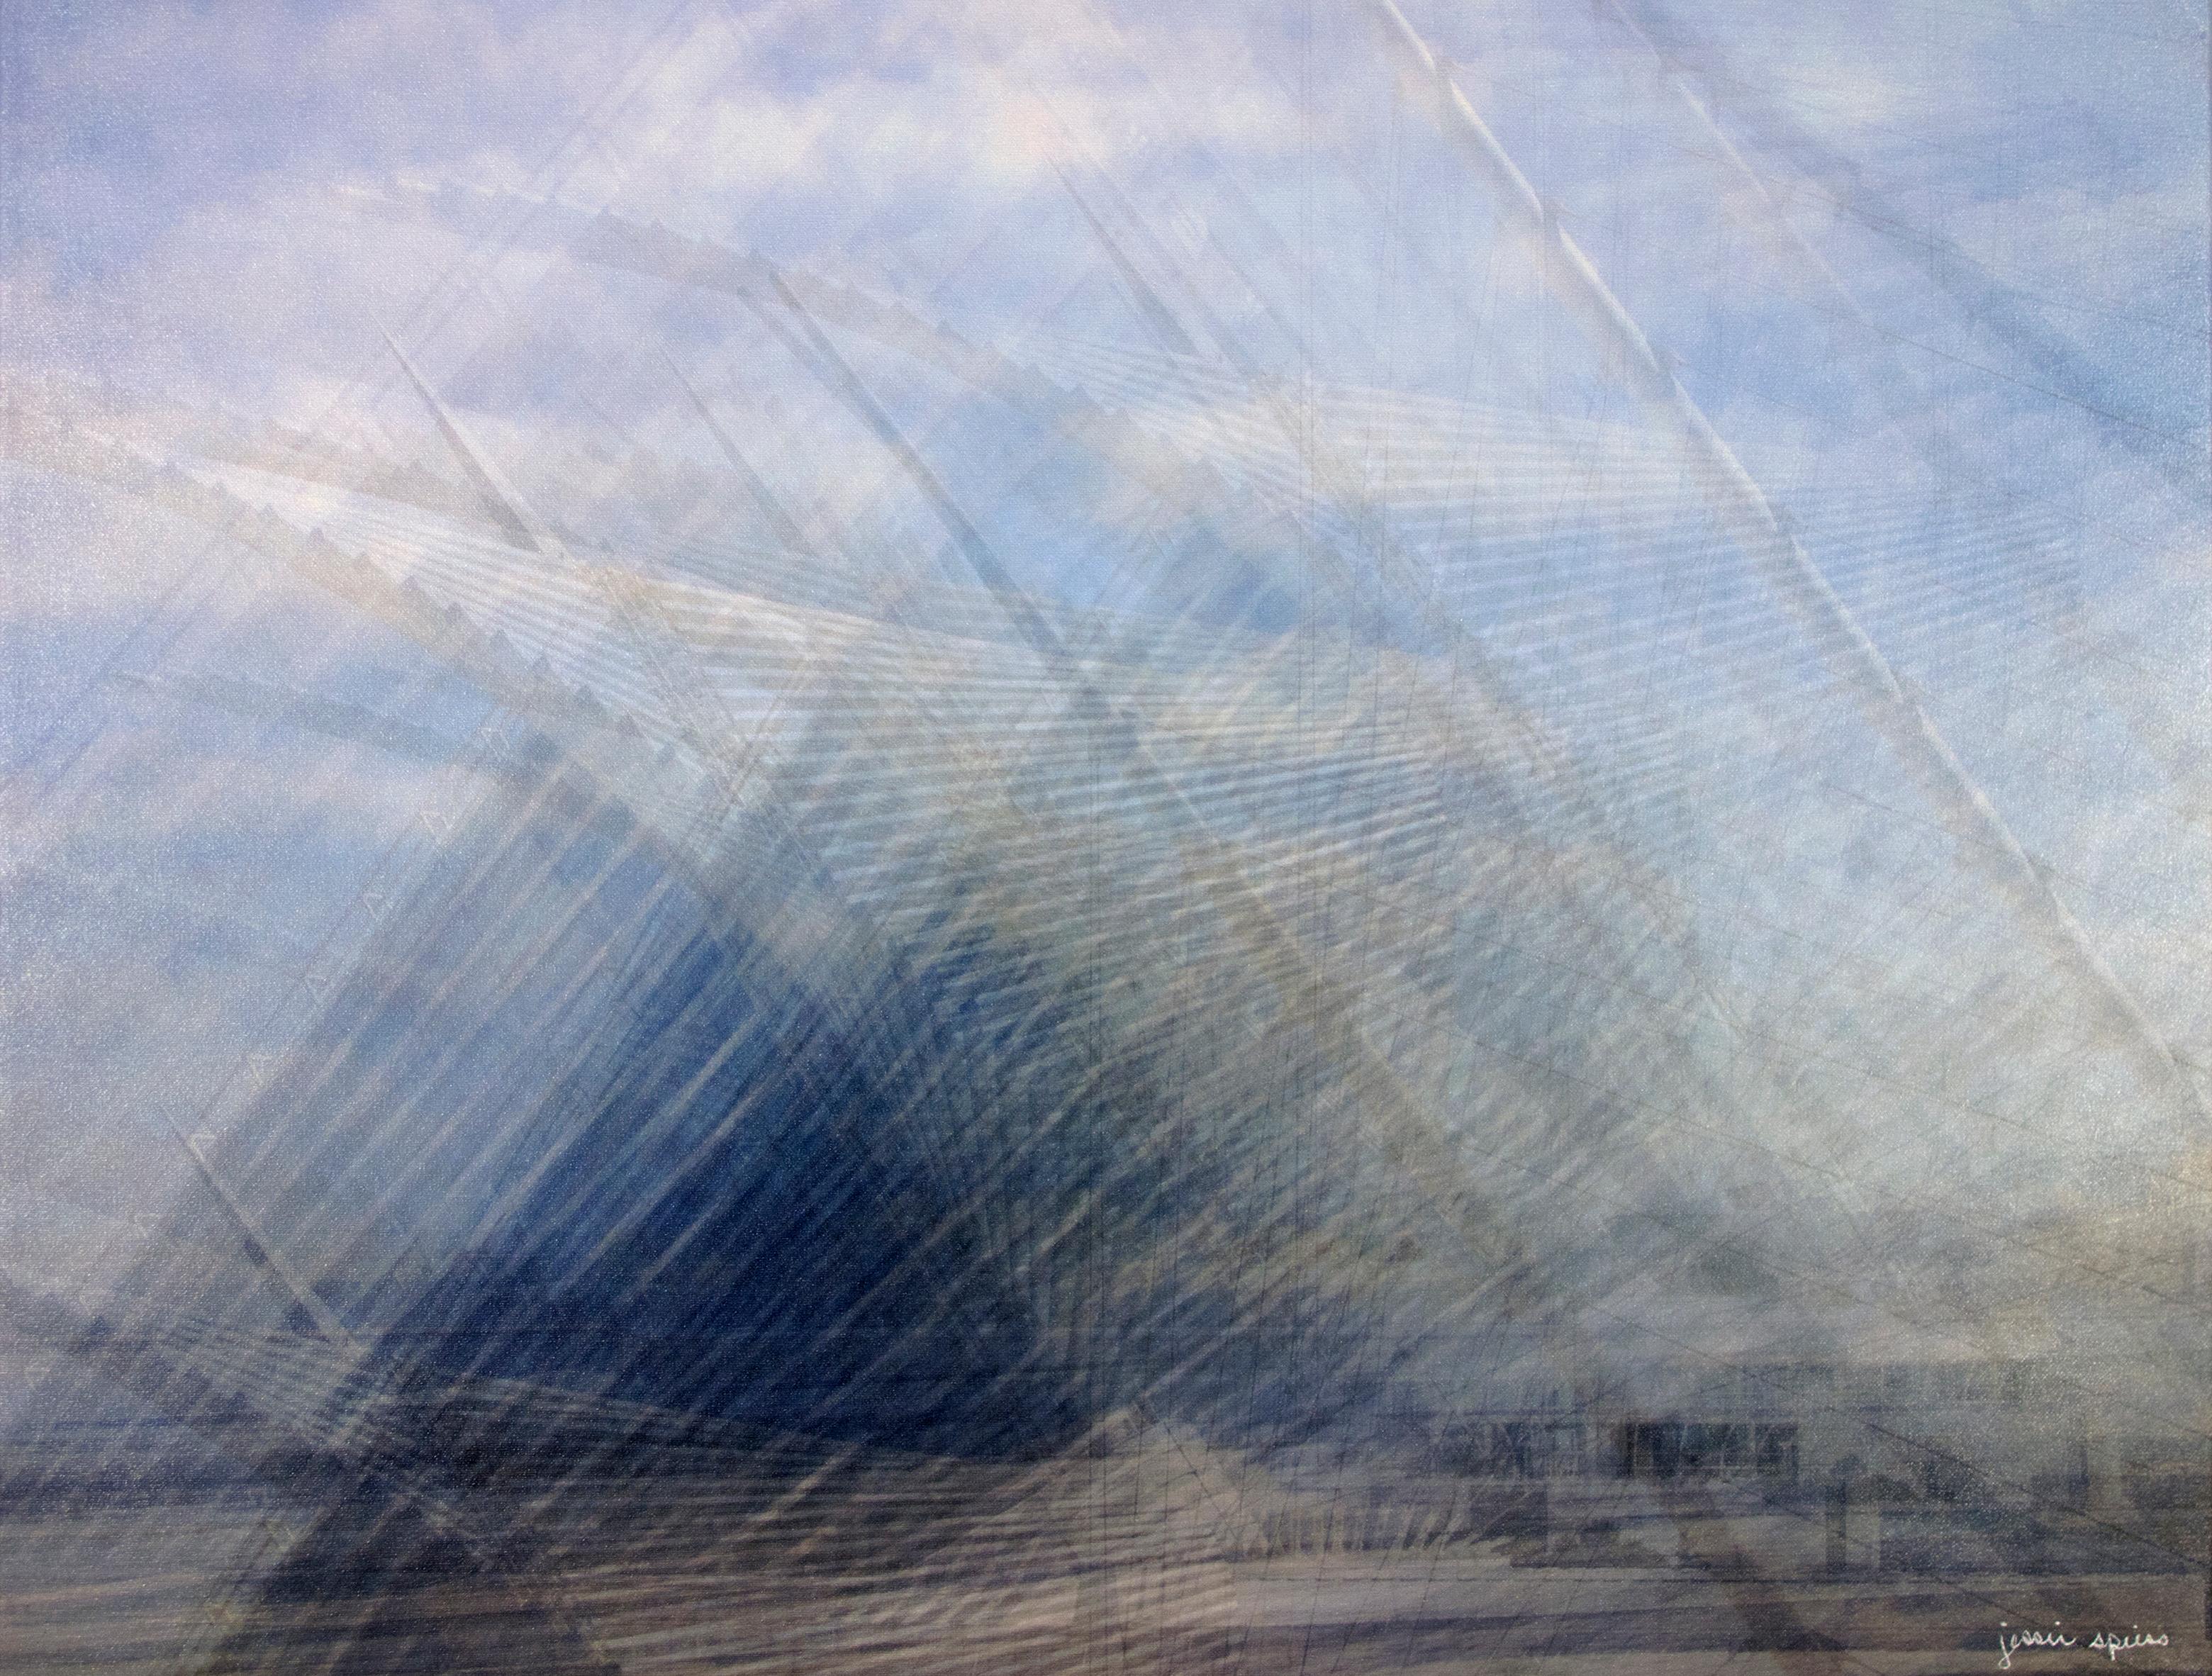 In diesem Bild wendet Jessie Spiess ihre charakteristische Mehrfachbelichtungstechnik auf den berühmten Quadracci-Pavillon des Milwaukee Art Museum an, der vom Architekten Santiago Calatrava entworfen wurde. Sie wendet ihre Kamera oft auf Ansichten